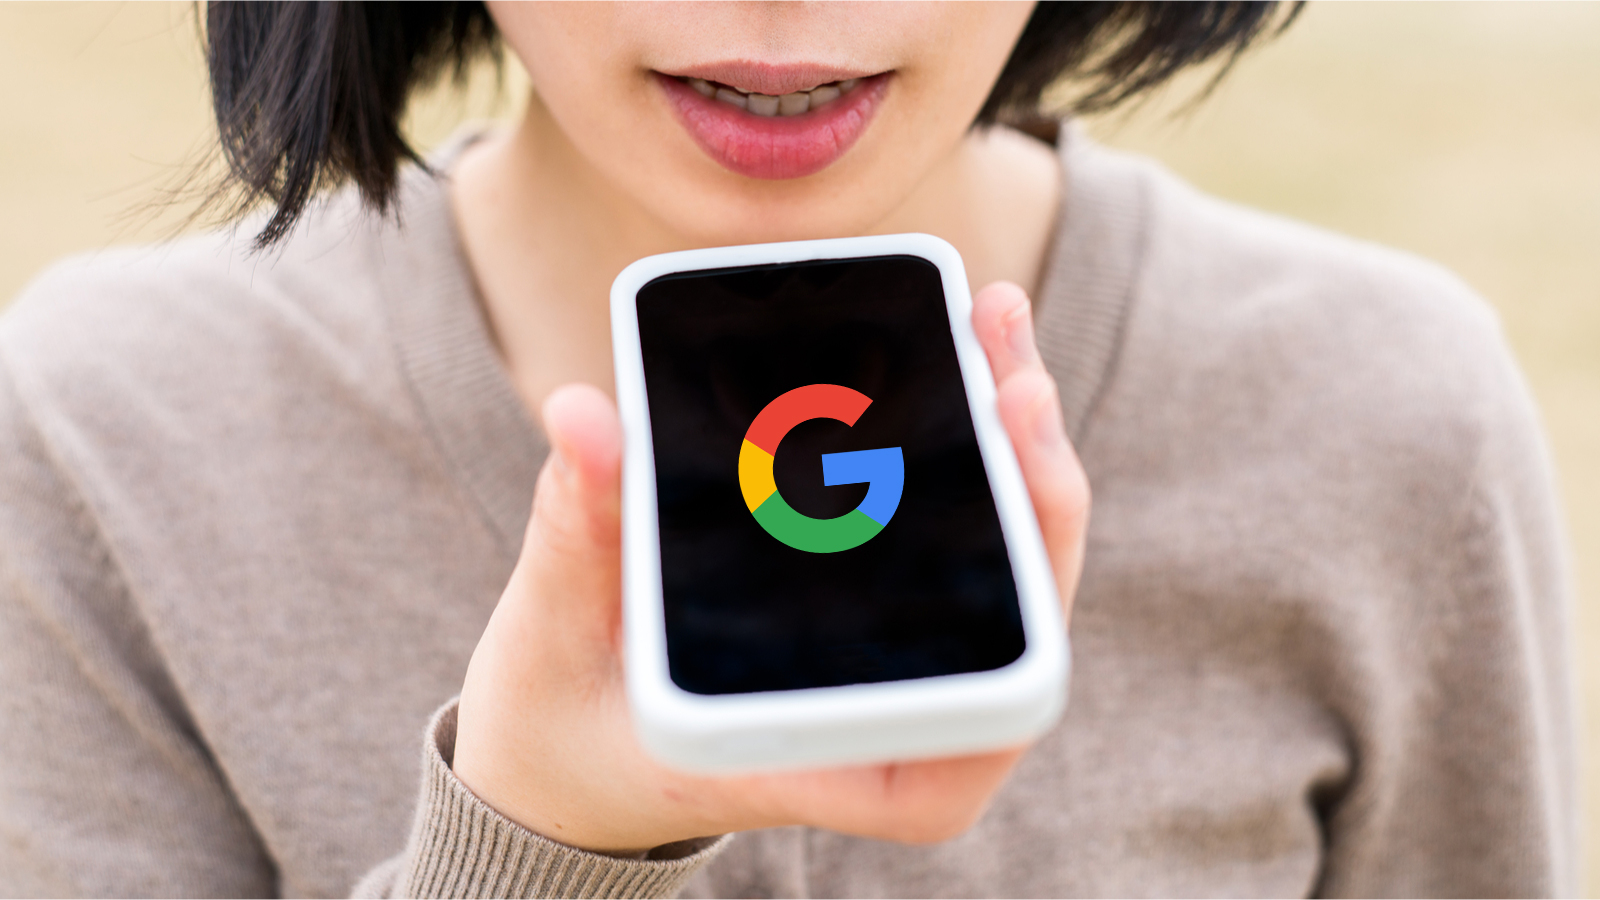 Google offre 300 ¬ à ceux qui l'aideront à améliorer sa reconnaissance vocale pour les personnes atteintes de troubles de la parole